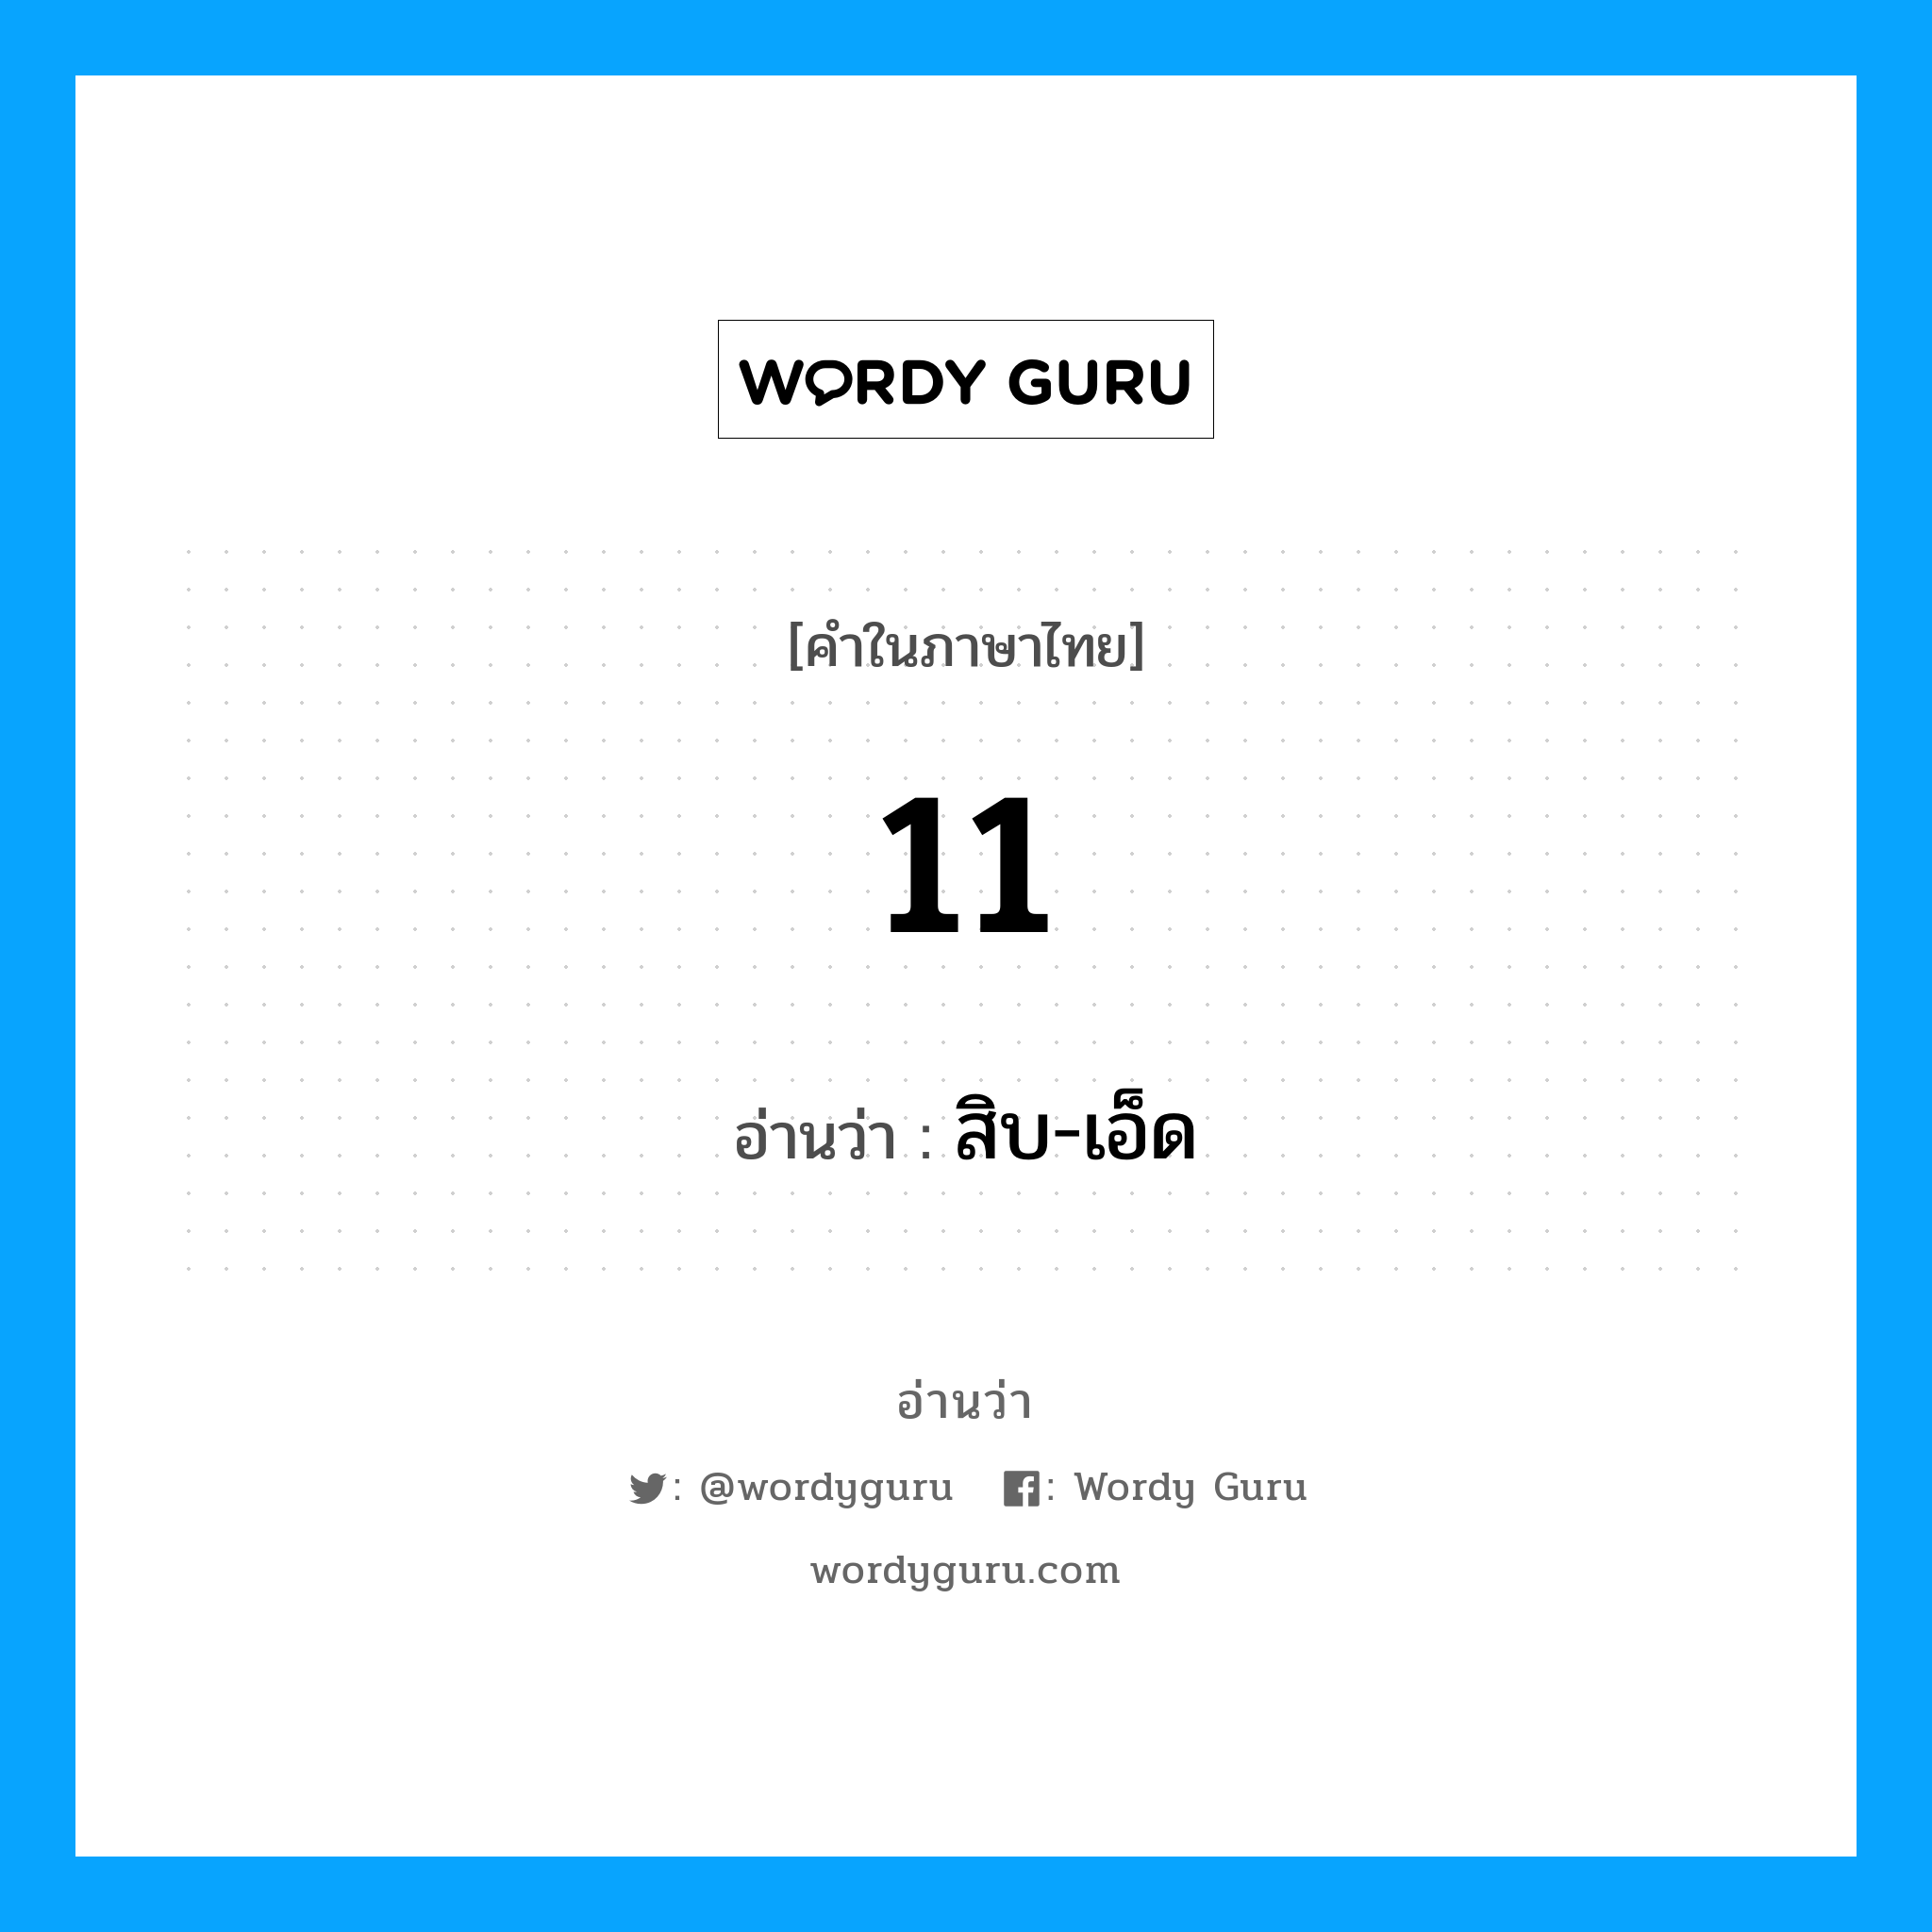 สิบ-เอ็ด เป็นคำอ่านของคำไหน?, คำในภาษาไทย สิบ-เอ็ด อ่านว่า 11 หมวด ตัวเลข หมวด ตัวเลข